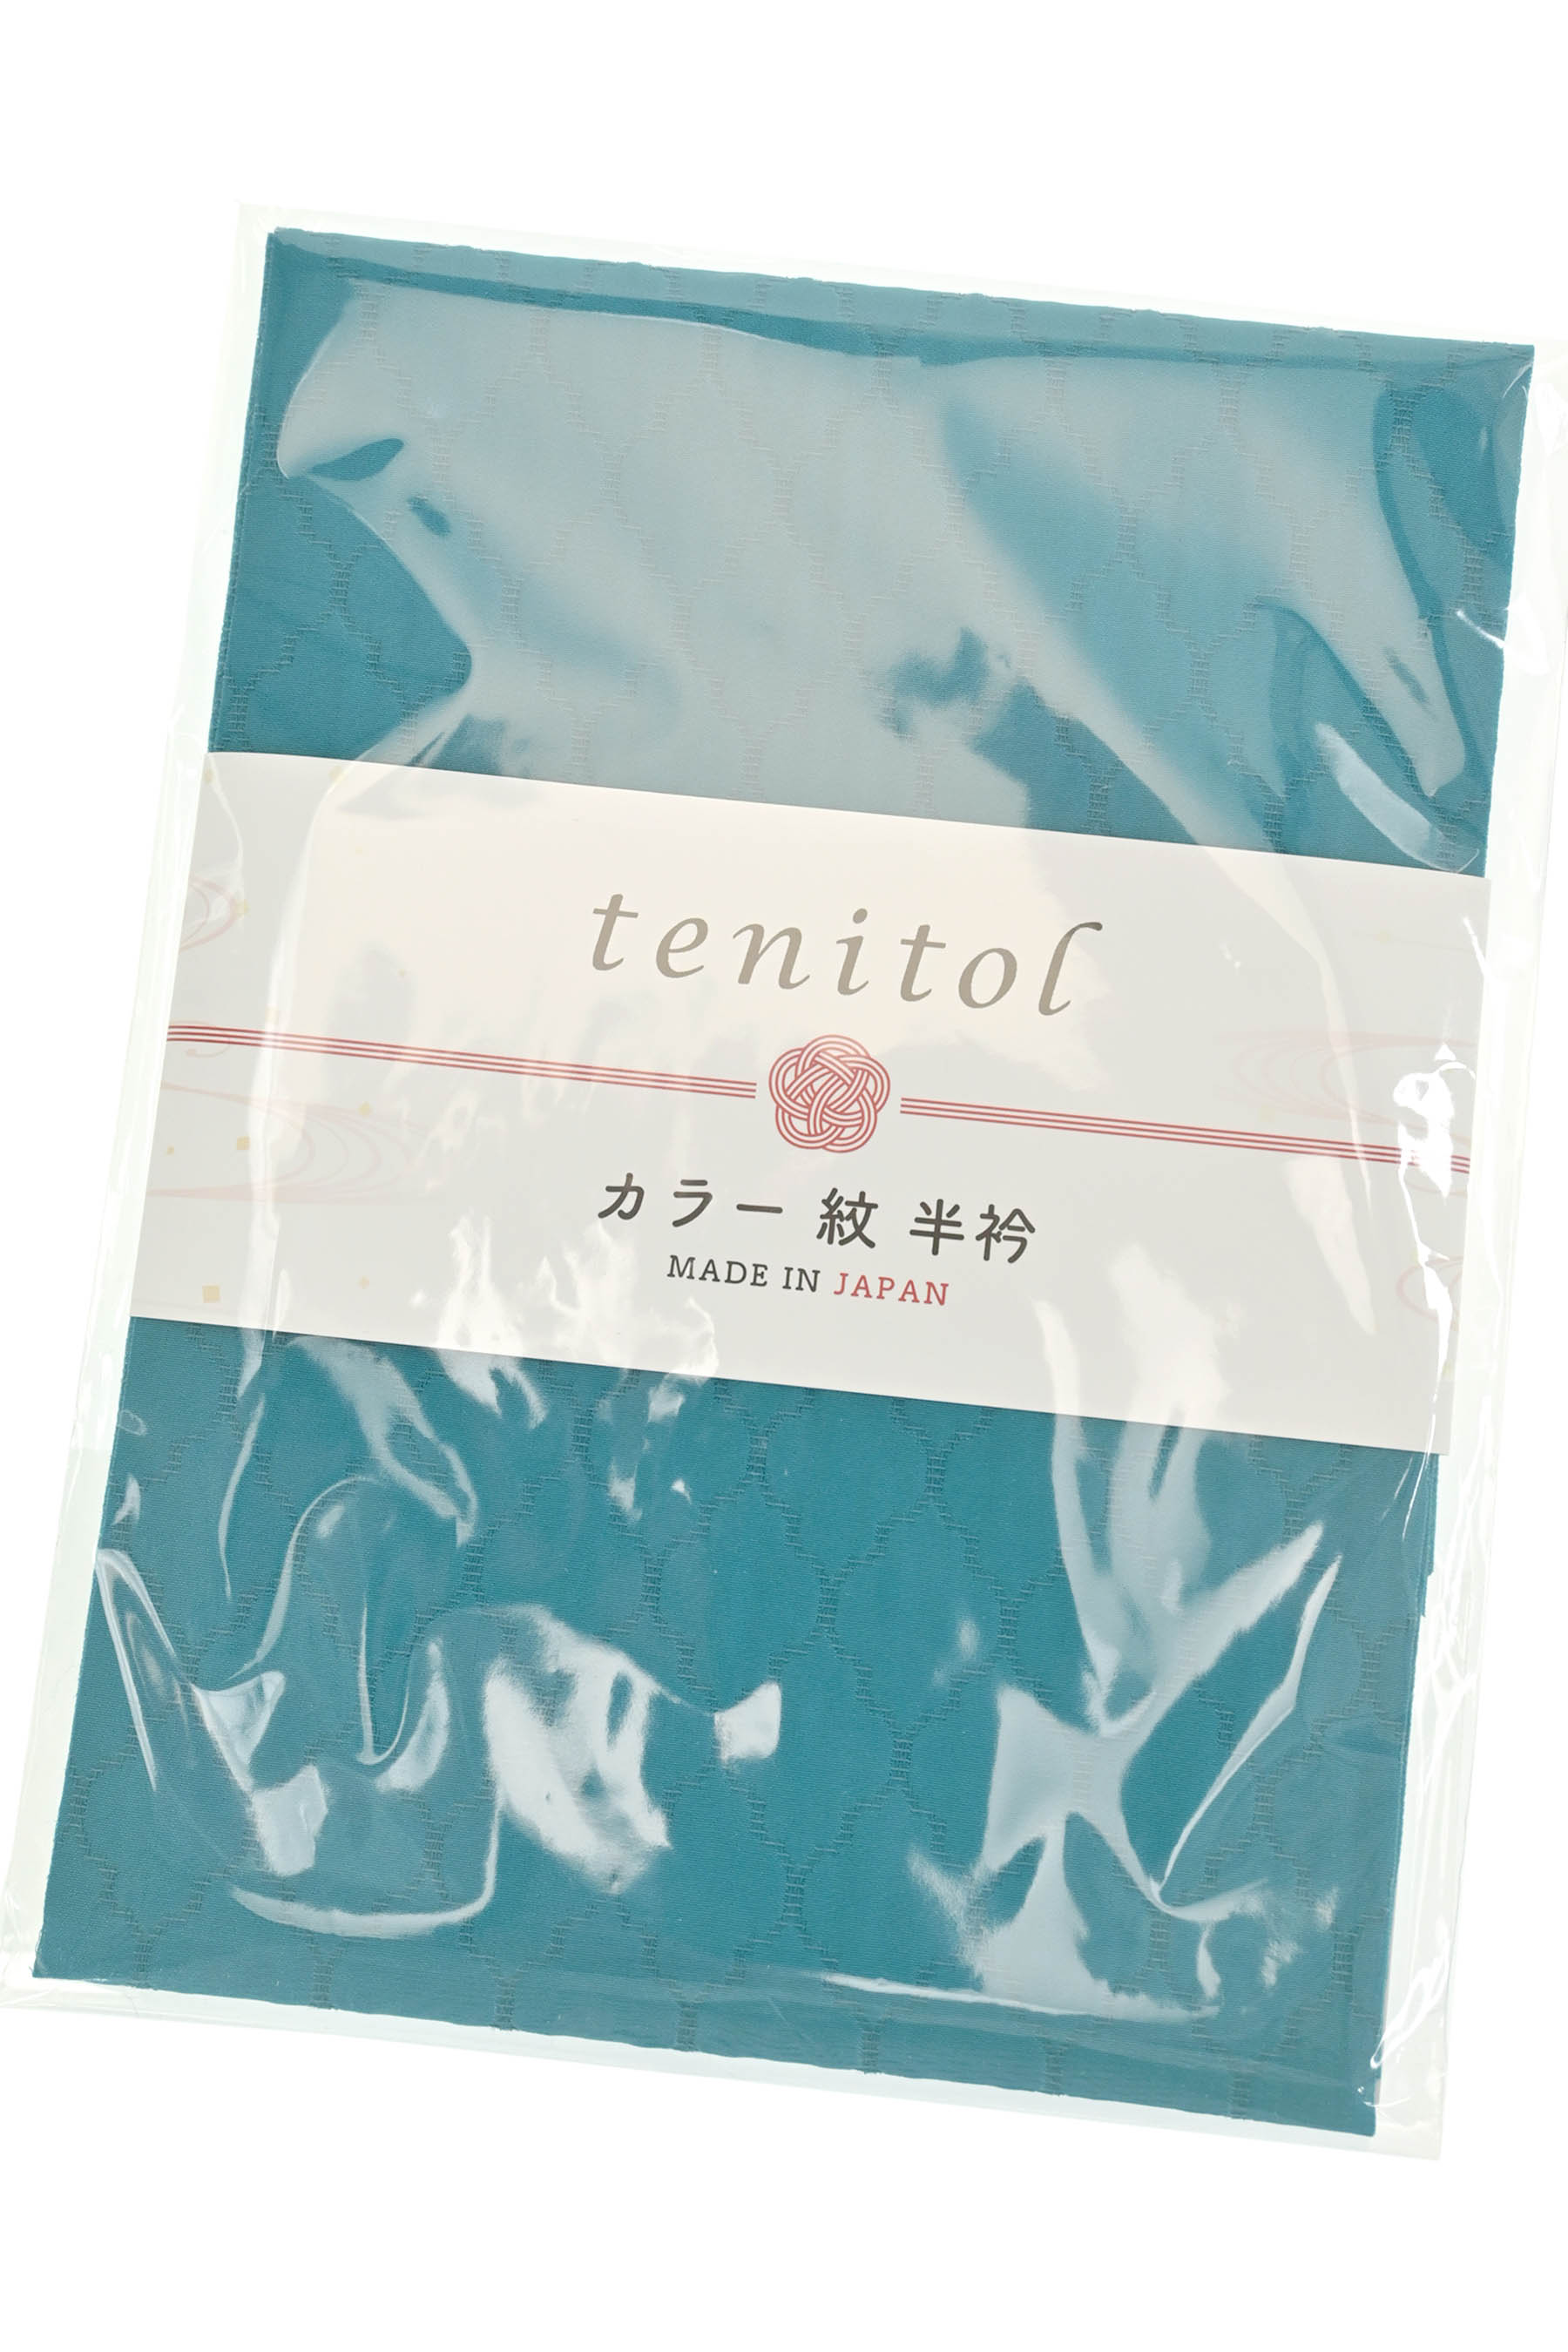 [日本製] tenitol カラー紋半衿 オリエンタル文様 ピーコック